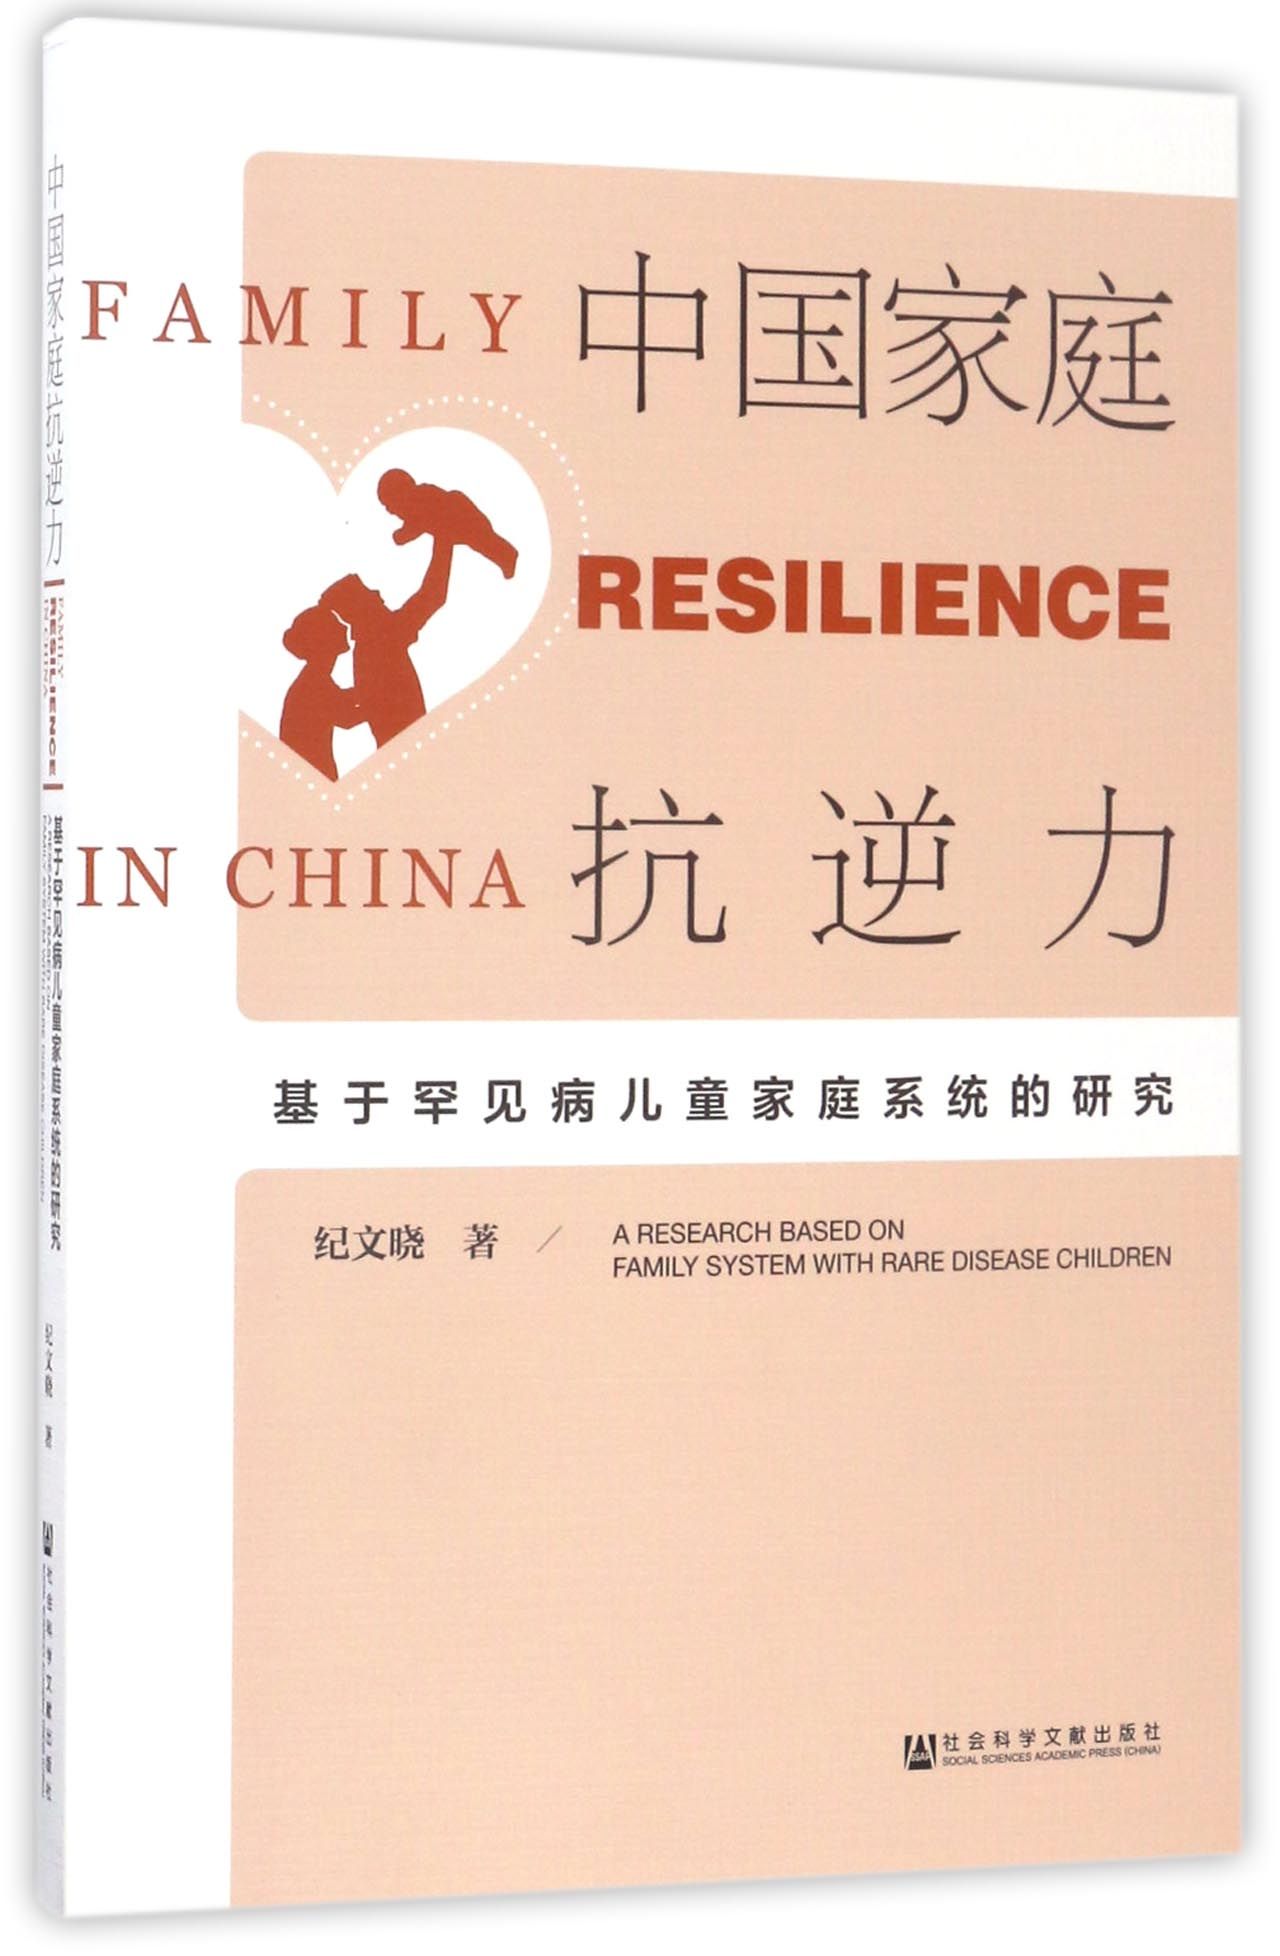 【正版新书】中国家庭抗逆力 纪文晓 社会科学文献出版社